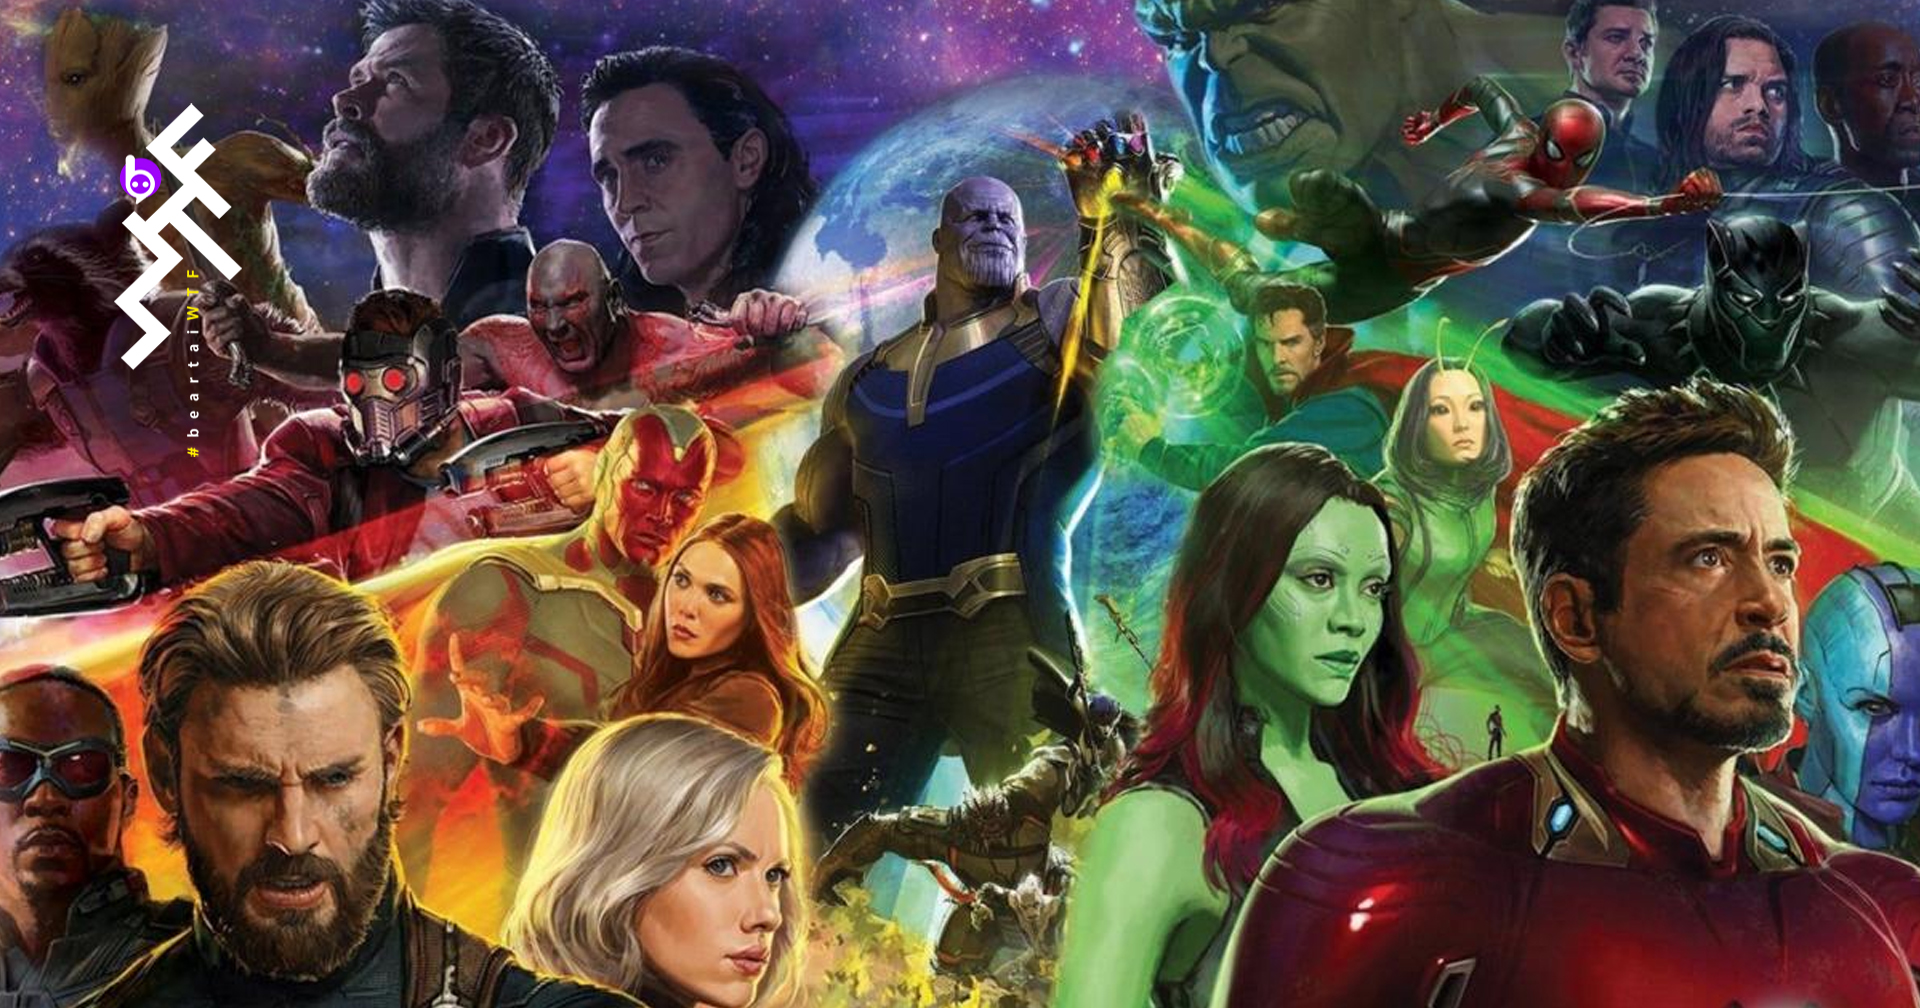 เชื่อหรือไม่? ตัวละครฮีโร Avengers แห่ง Marvel เหล่านี้ ไม่เคยเจอกันบนจอหนังเลย!